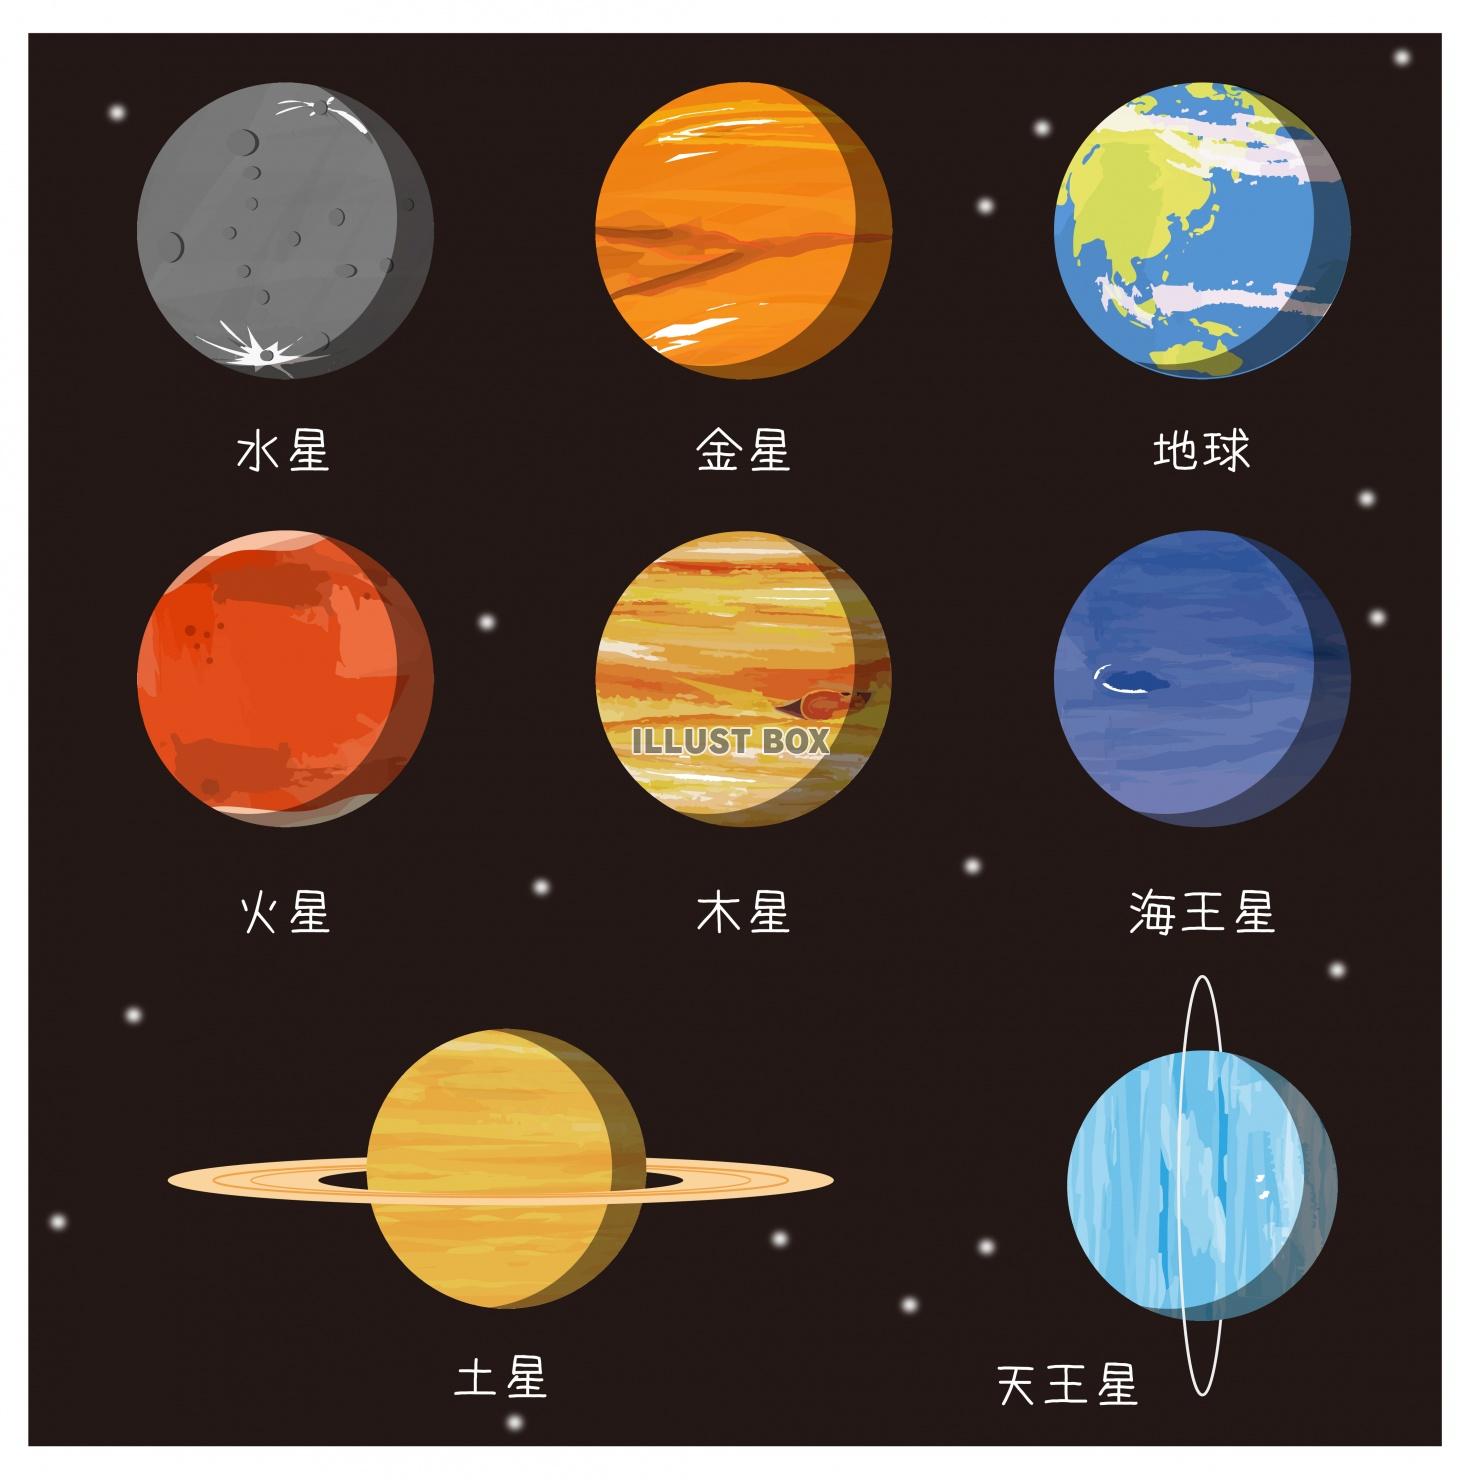 無料イラスト 太陽系惑星のイメージセット